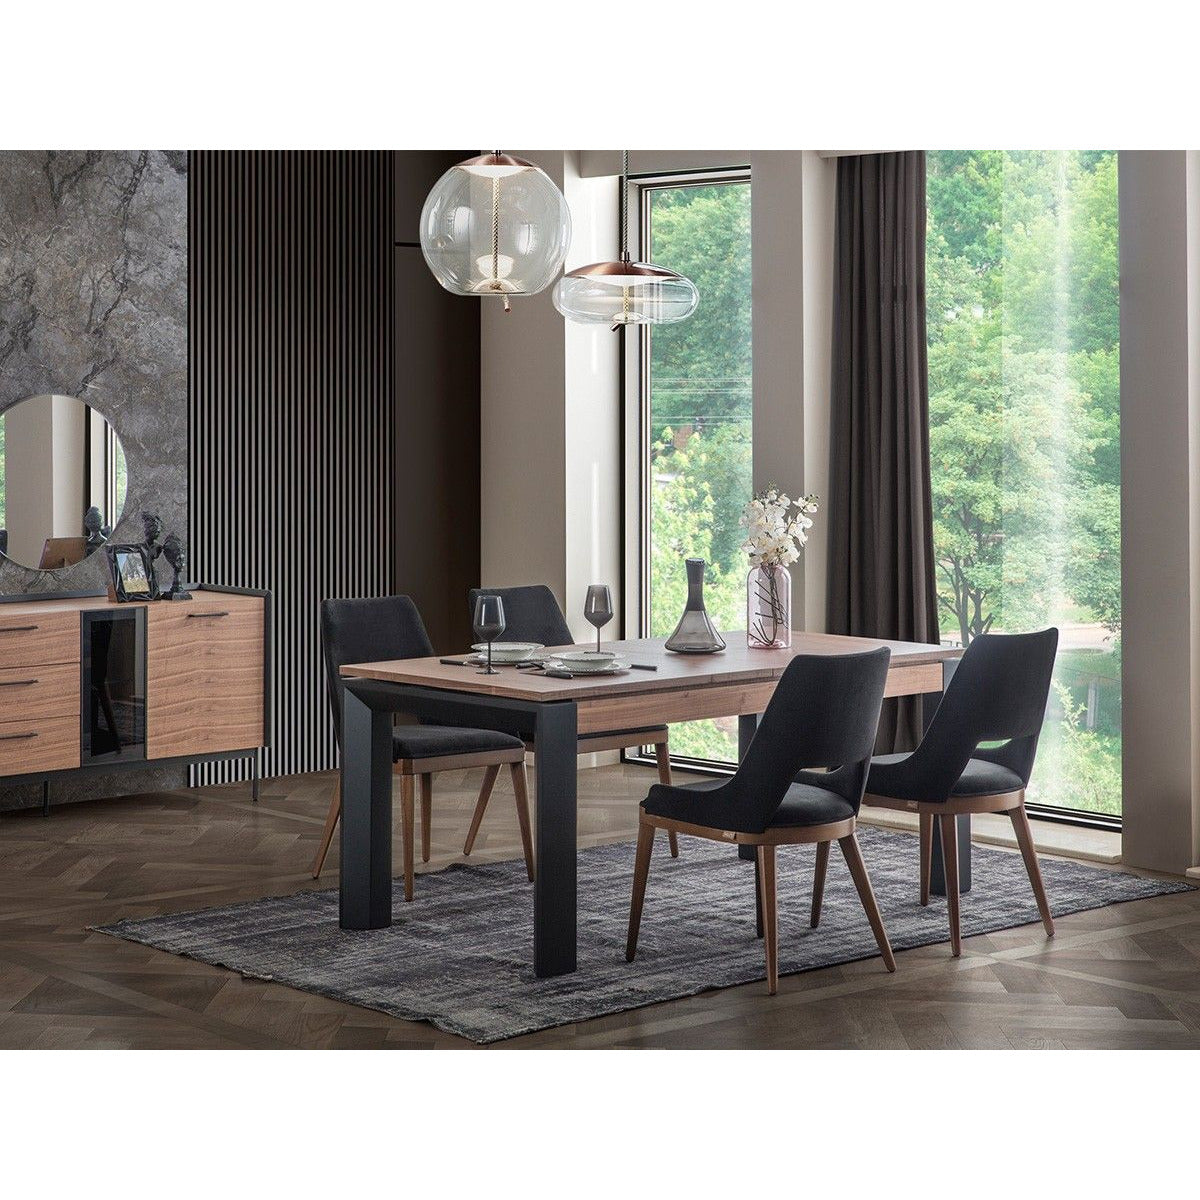 Rita Stol - LINE Furniture Group